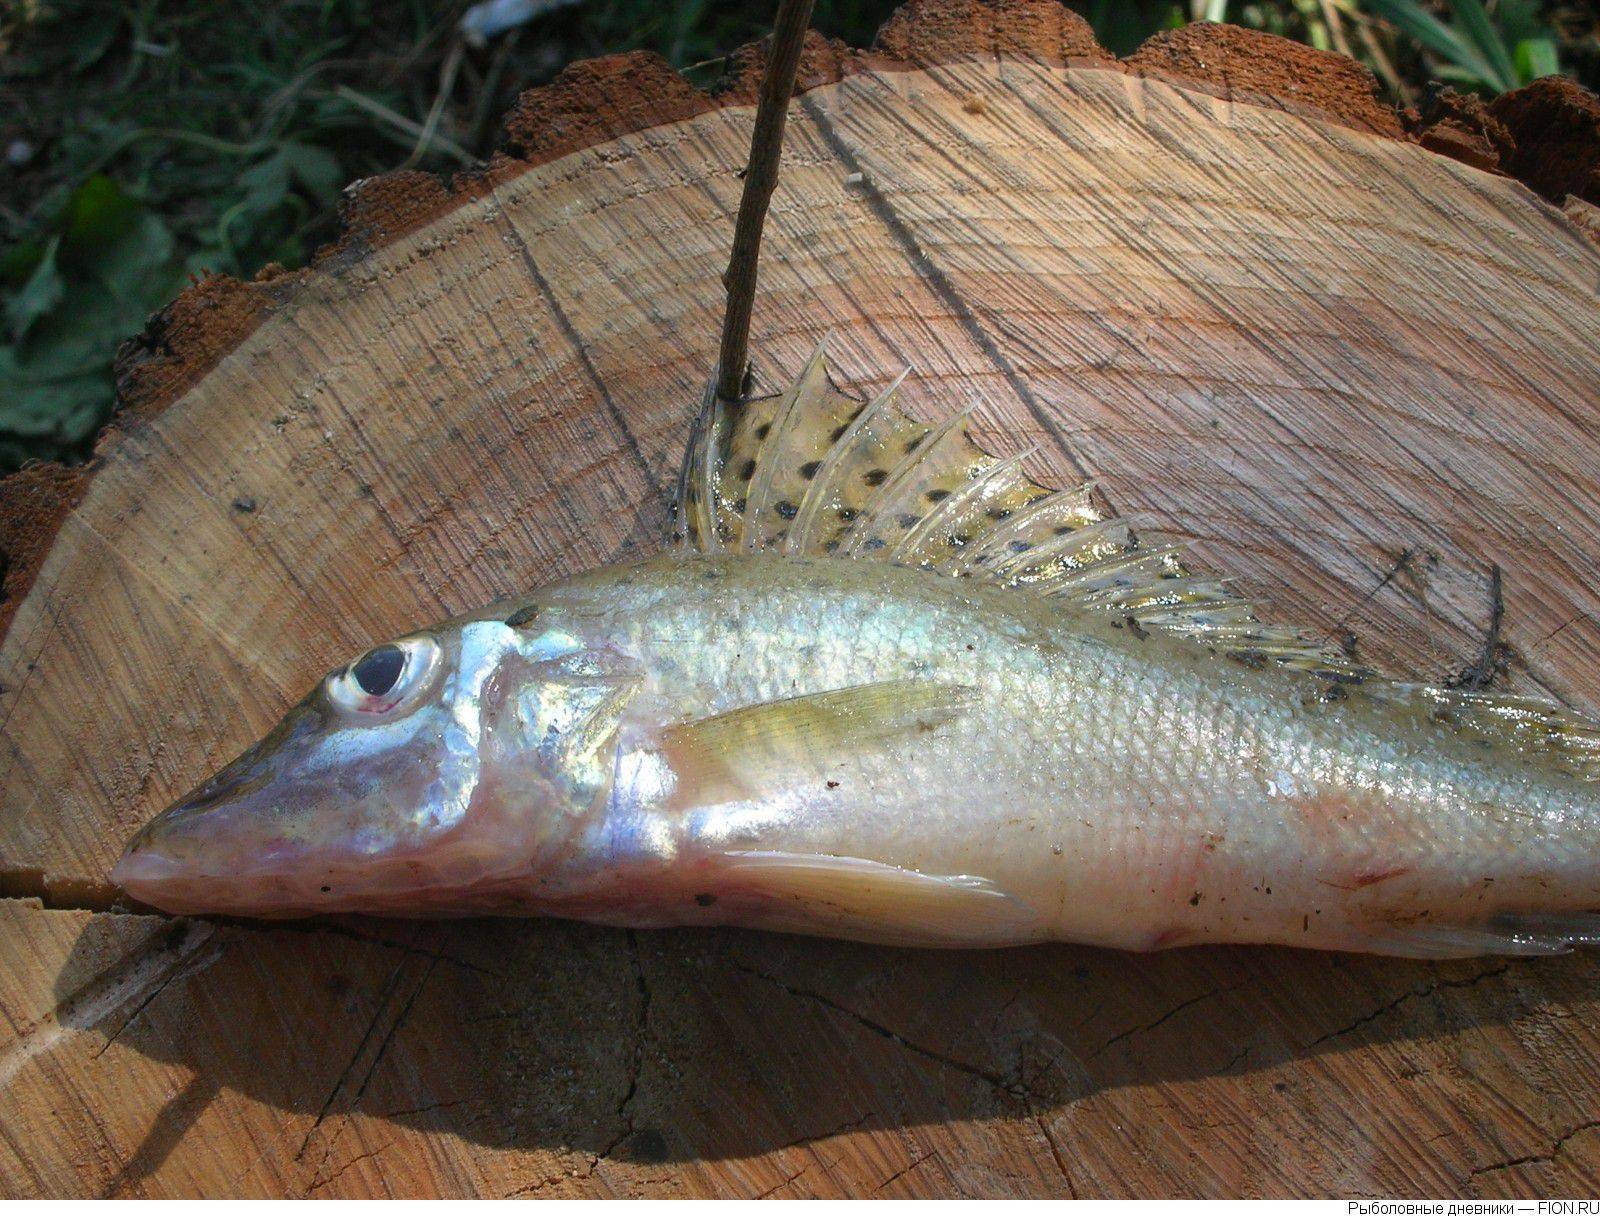 Рыба ёрш: размеры и разновидности, где обитает и чем питается, правила ловли